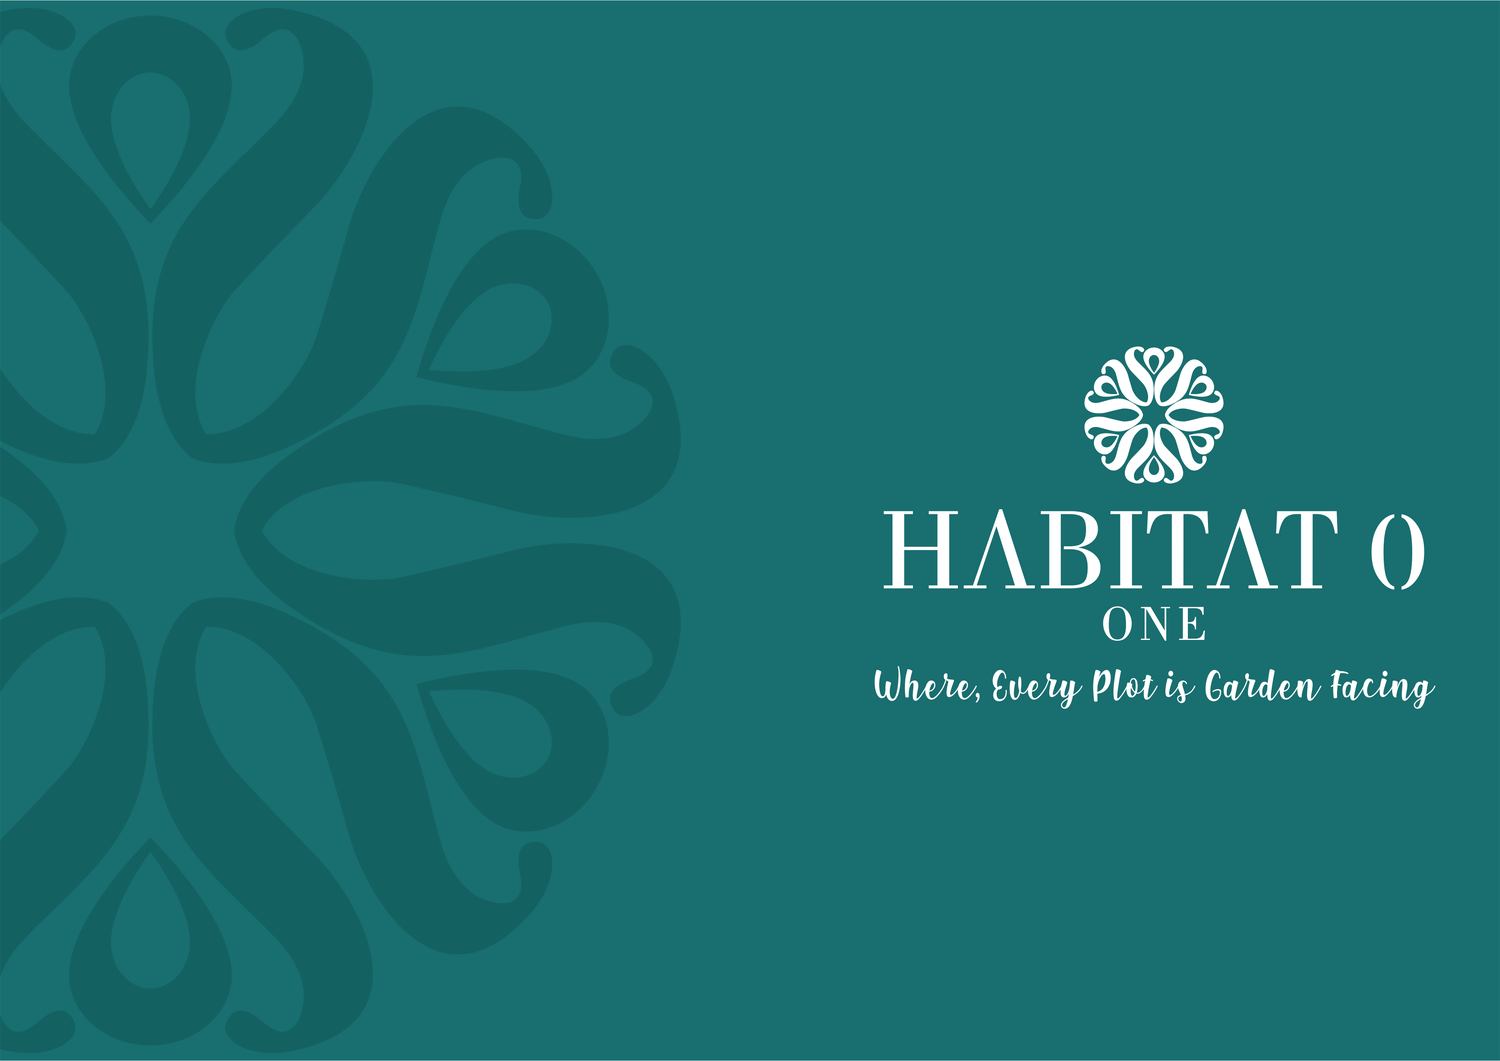 Habitat 0 One